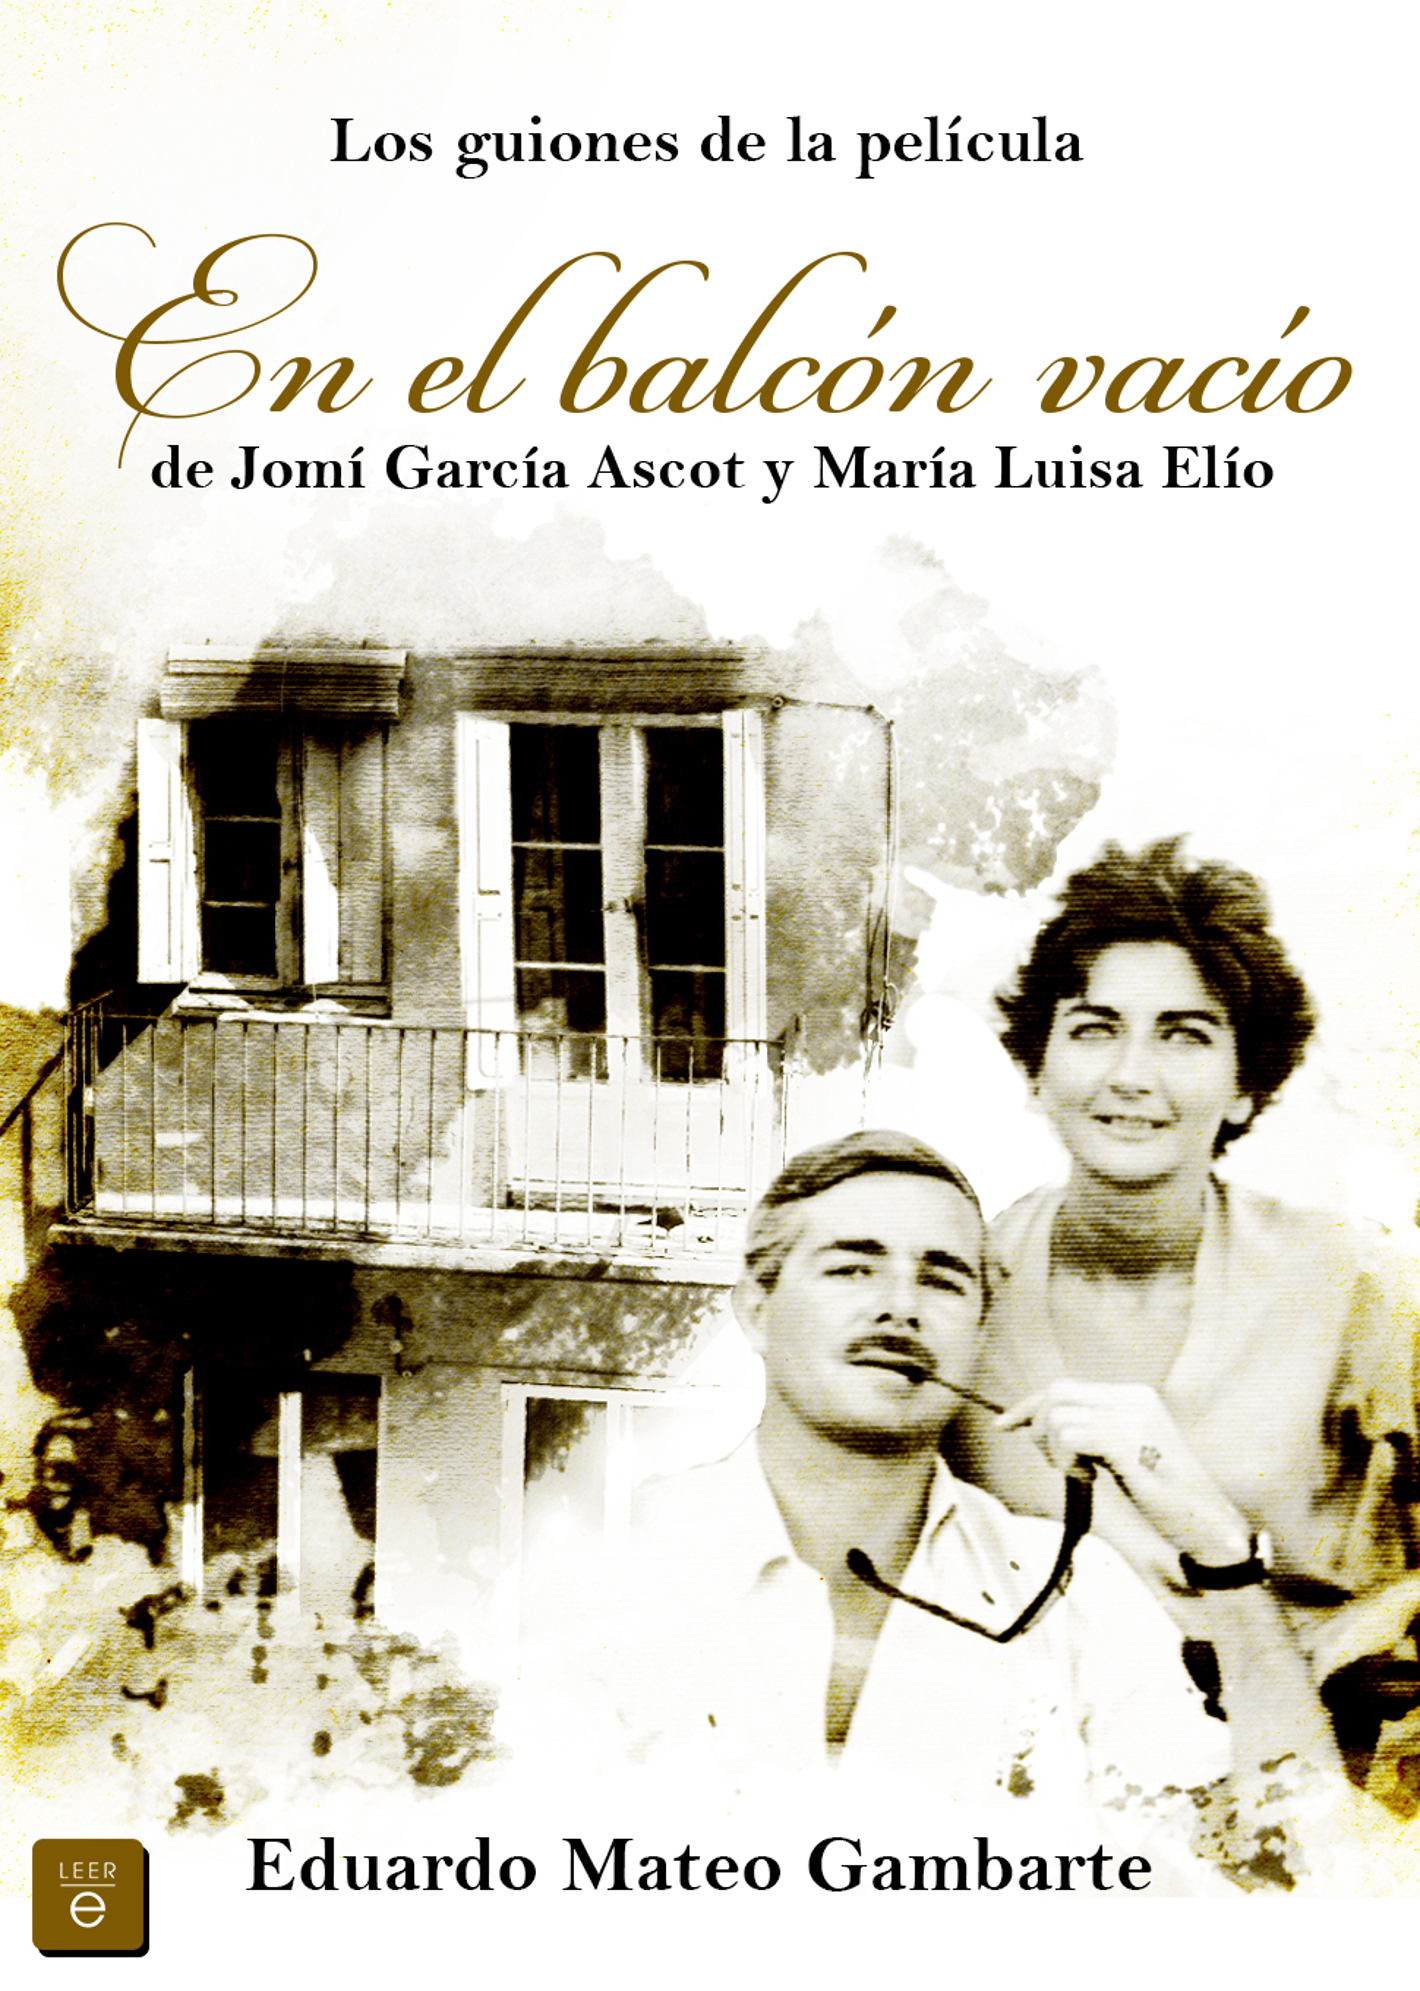 Los guiones de la película: en el balcón vacío de Jomí García Ascot y María Luisa Elío – Eduardo Mateo Gambarte